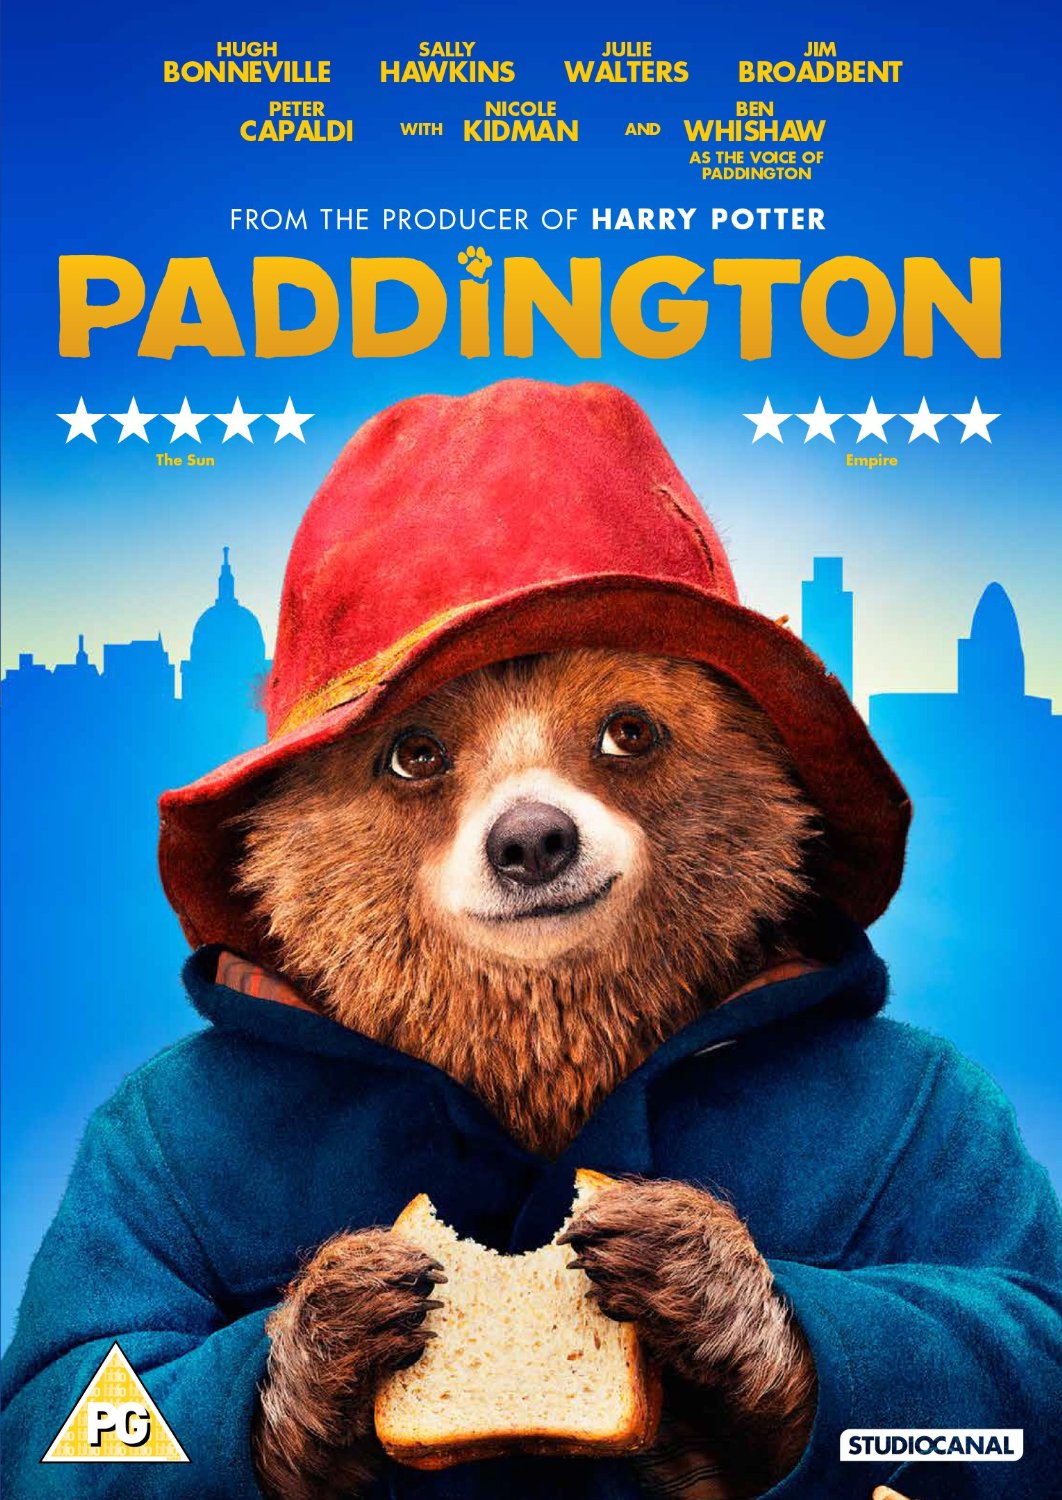 Paddington Movie Review